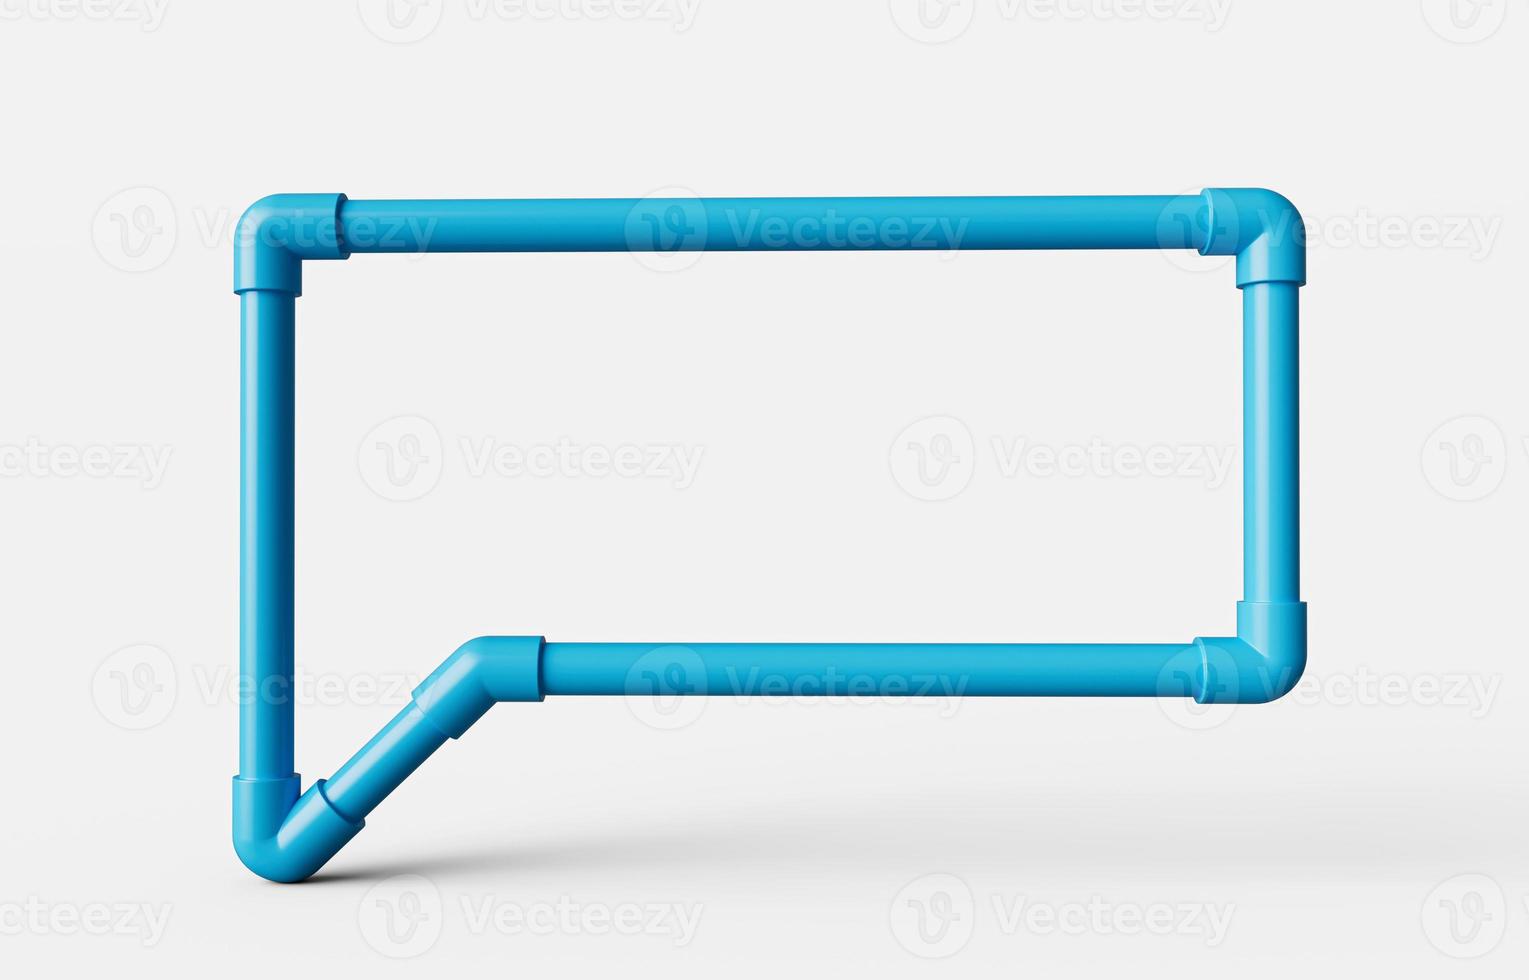 bulle bleue faite avec des tuyaux en pvc illustration 3d isolée photo